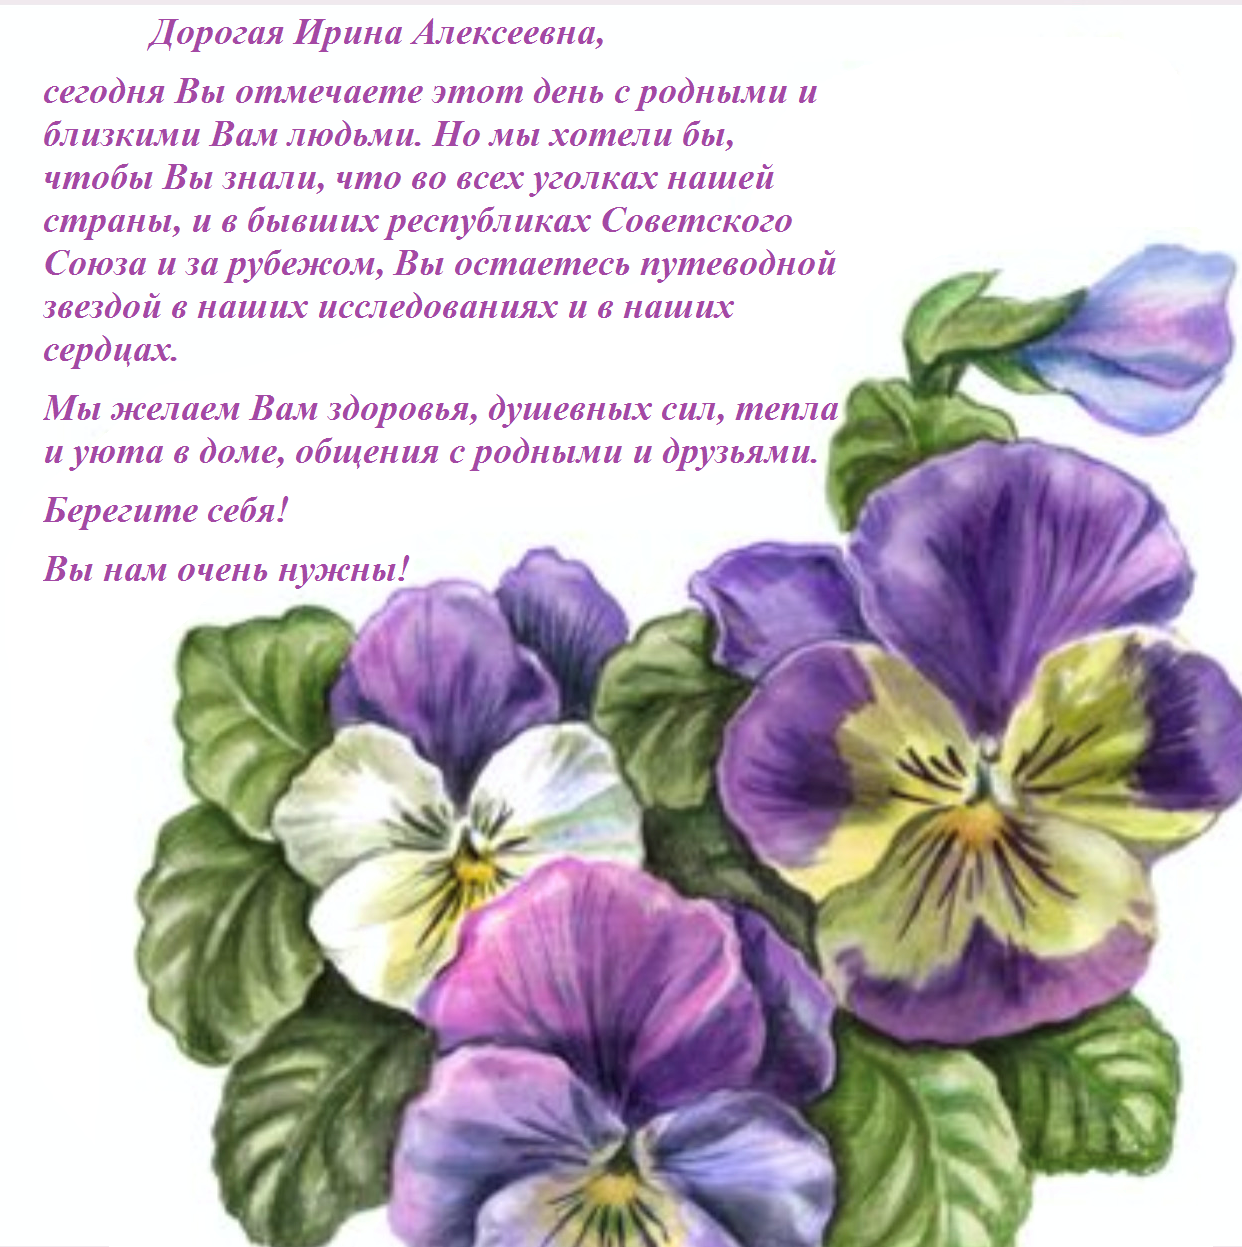 17 марта 2022 г. С огромным удовольствием поздравляем дорогую Ирину Алексеевну Зимнюю с прекрасной датой – 91 год.